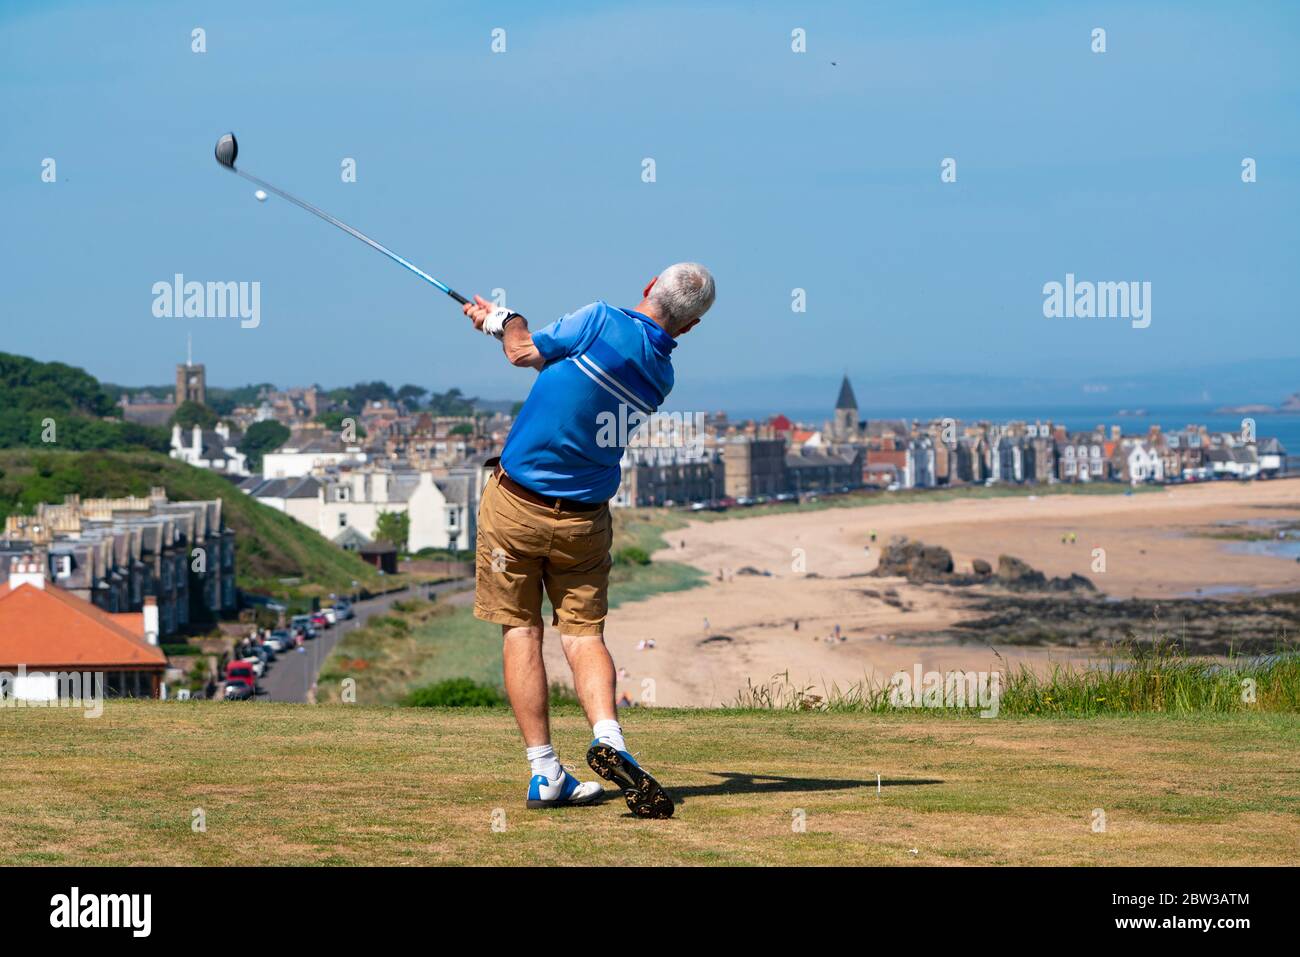 North Berwick, Schottland, Großbritannien. 29 Mai 2020. Golfer, die im Glen Golf Club in North Berwick spielen. Heißes, sonniges Wetter und eine Entspannung der Covid-19-Sperrregeln in Schottland bedeuten, dass Golf jetzt gespielt werden kann. Die Anzahl der Spieler ist auf zwei pro Spiel begrenzt. Iain Masterton/Alamy Live News Stockfoto